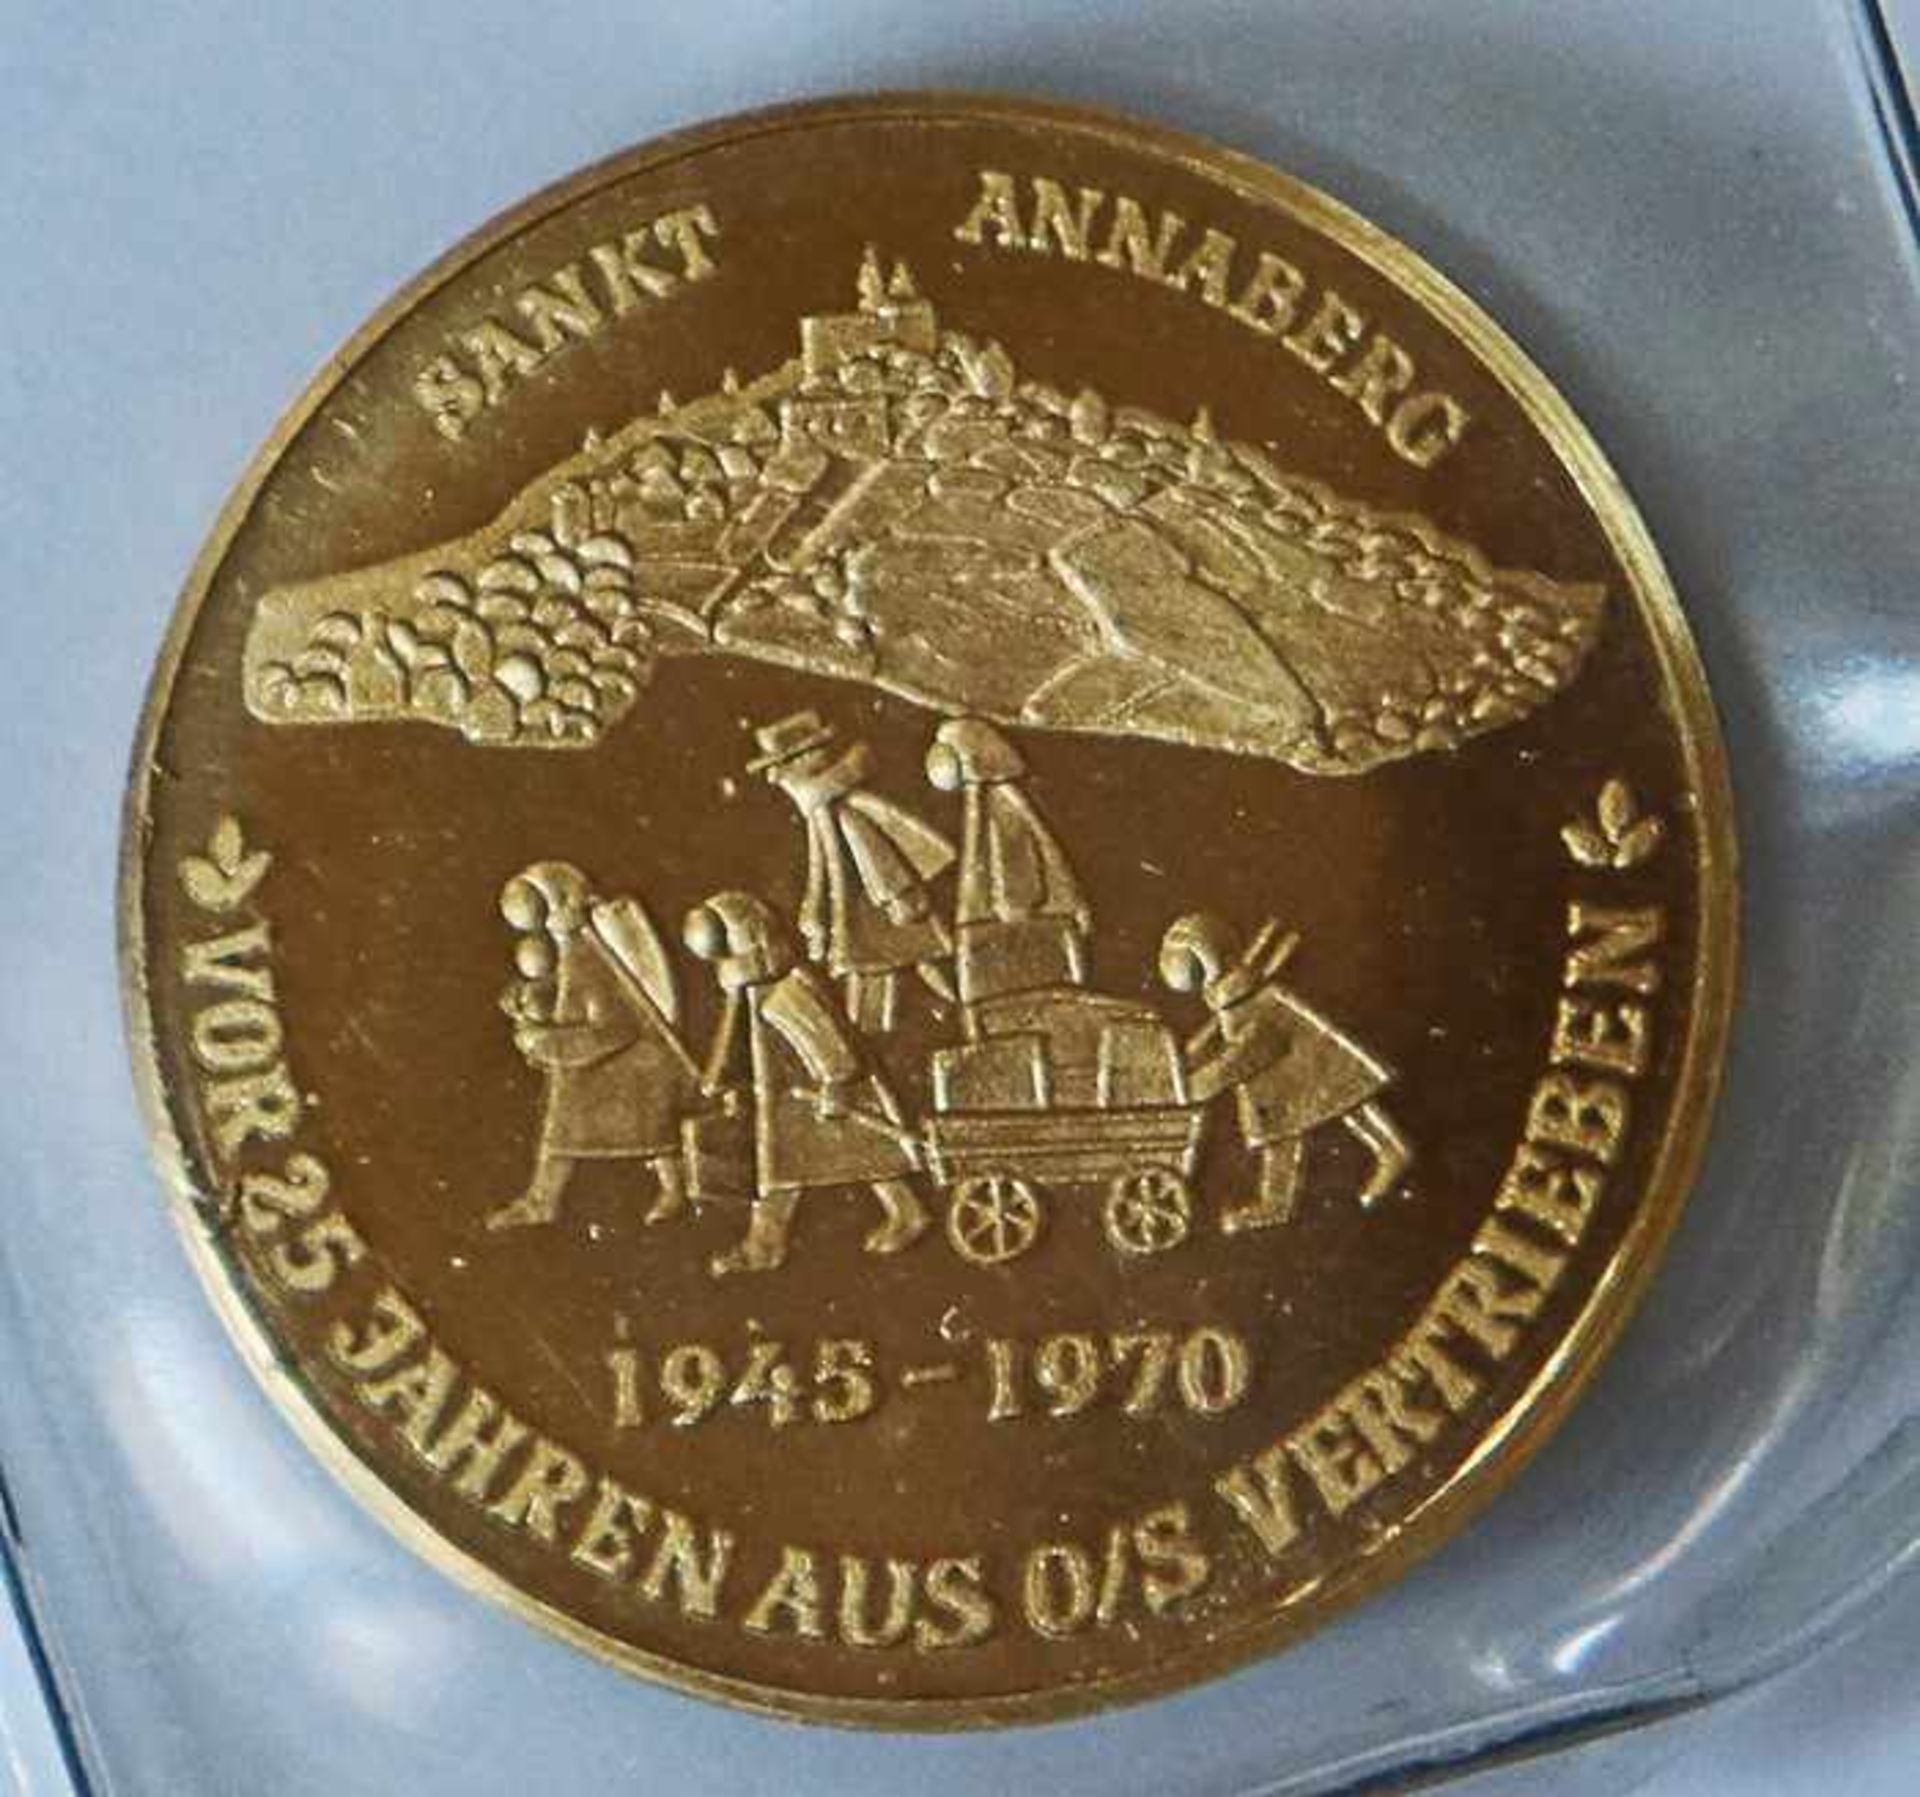 Gold - Medaille Polen 1970gest. 986, Sankt Annaberg - vor 25 Jahren aus O/S vertrieben, D 20mm, - Image 2 of 4